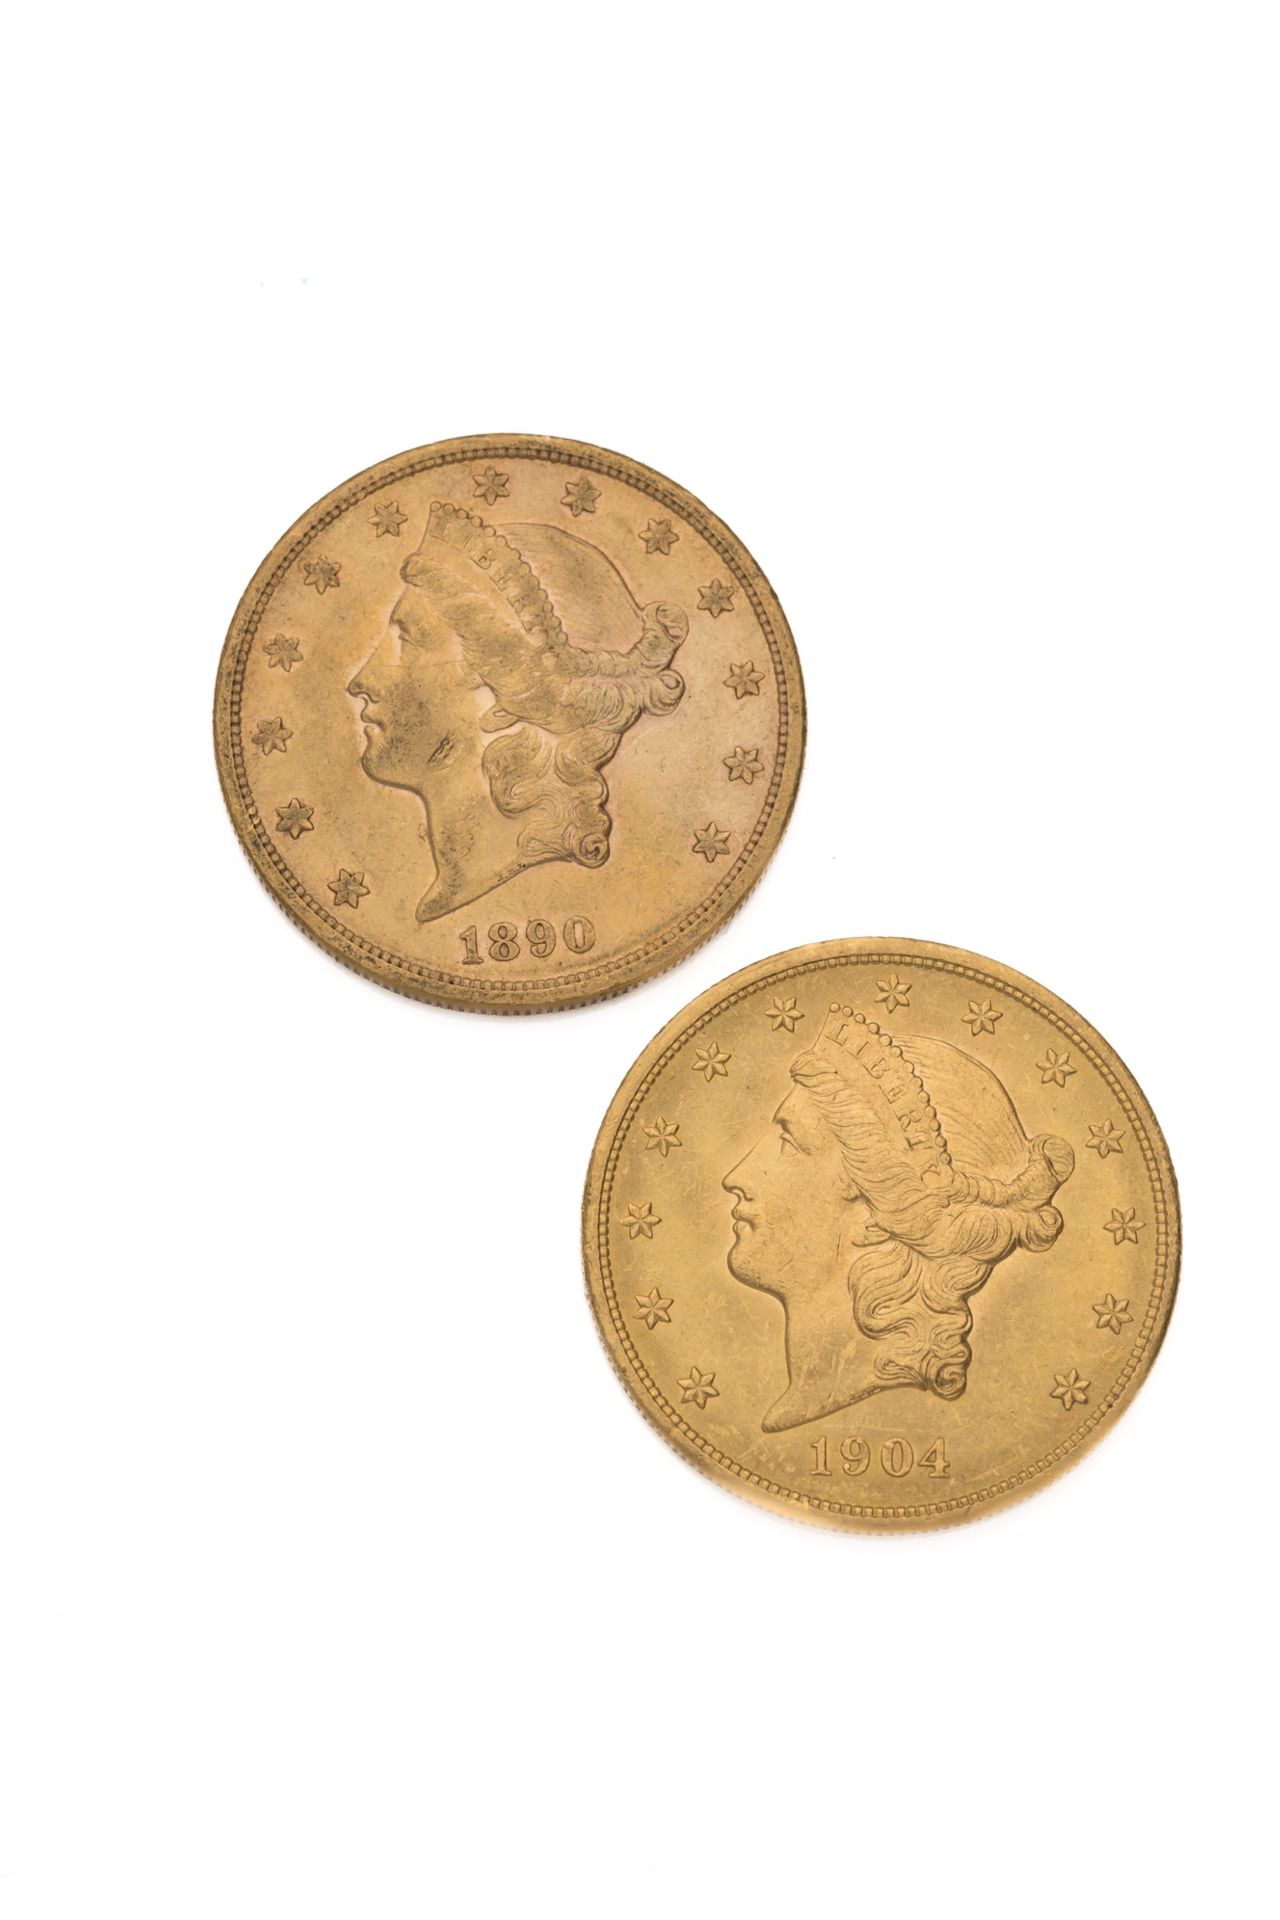 Null ESTADOS UNIDOS
20 de oro, tipo Libertad. 2 monedas. 1890 y 1904.
Peso : 66,&hellip;